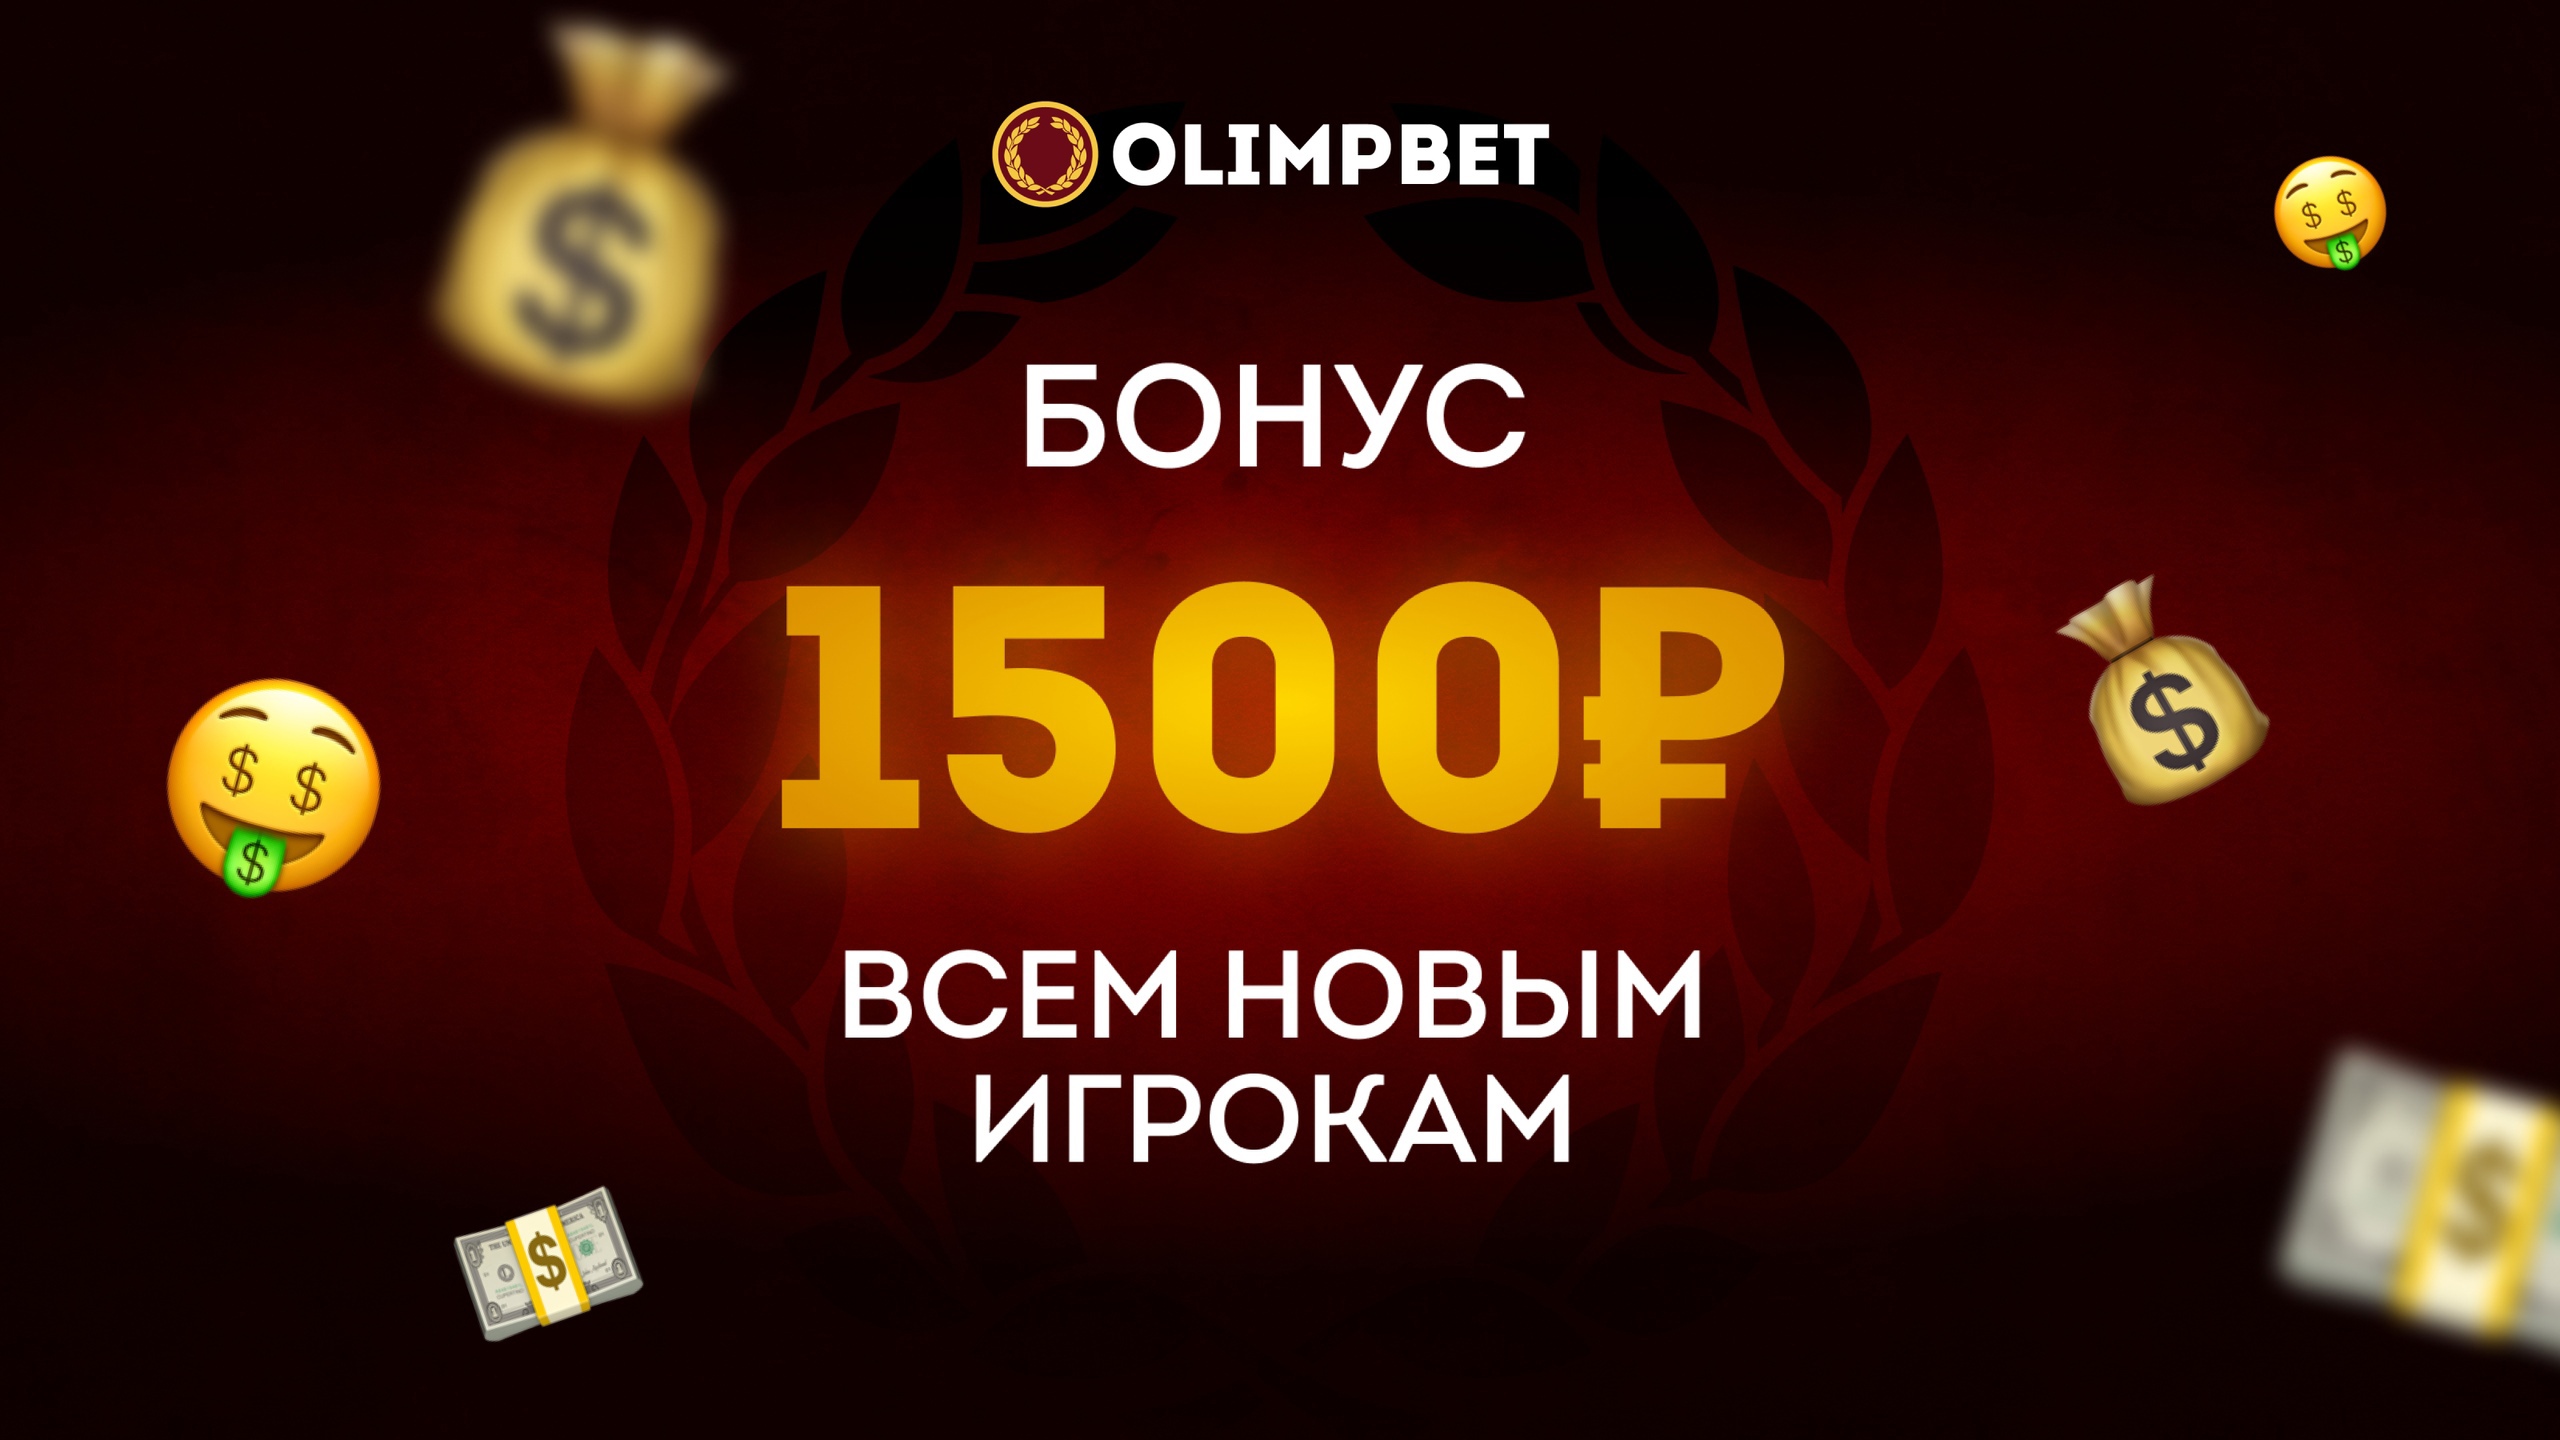 Обновленный welcome-бонус от Olimpbet: новые клиенты получат до 1500 рублей